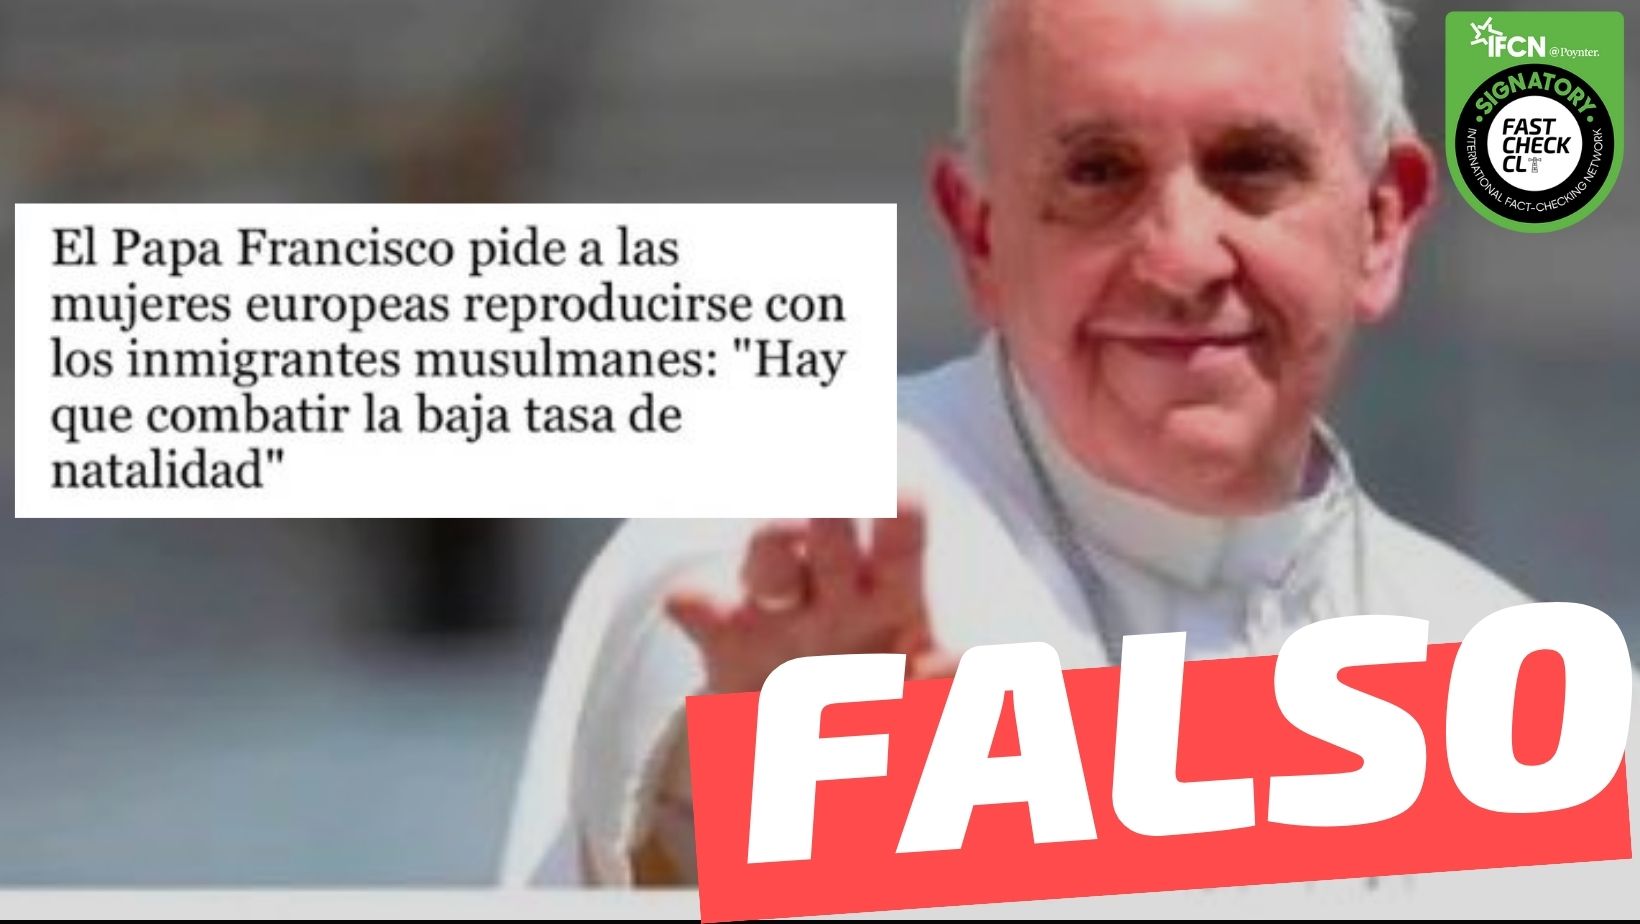 You are currently viewing “El Papa Francisco pide a las mujeres europeas reproducirse con los inmigrantes musulmanes: ‘Hay que combatir la baja tasa de natalidad'”:#Falso